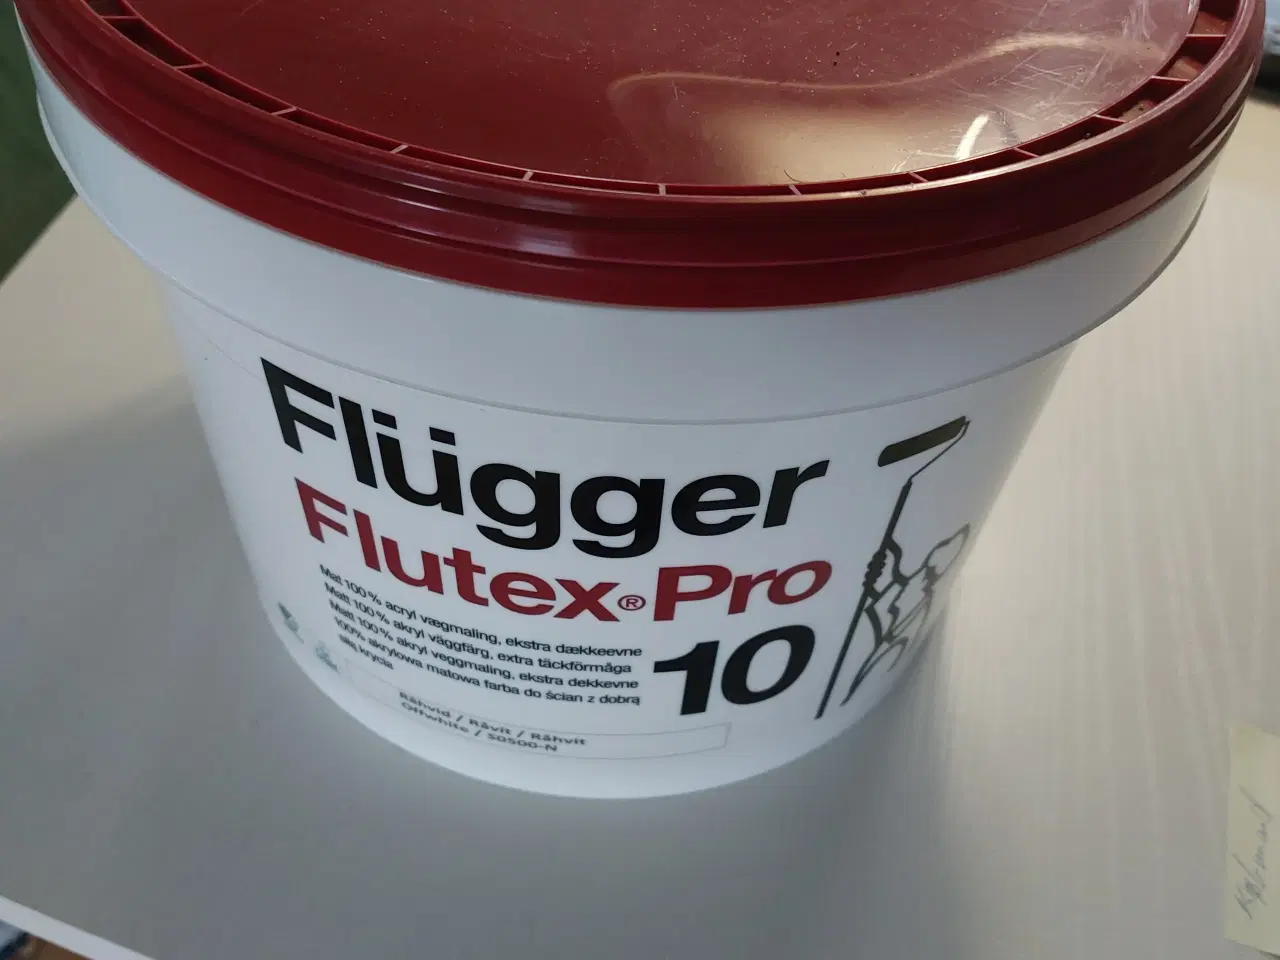 Billede 1 - Ny flugger flutex pro mat glans 10.10 liter